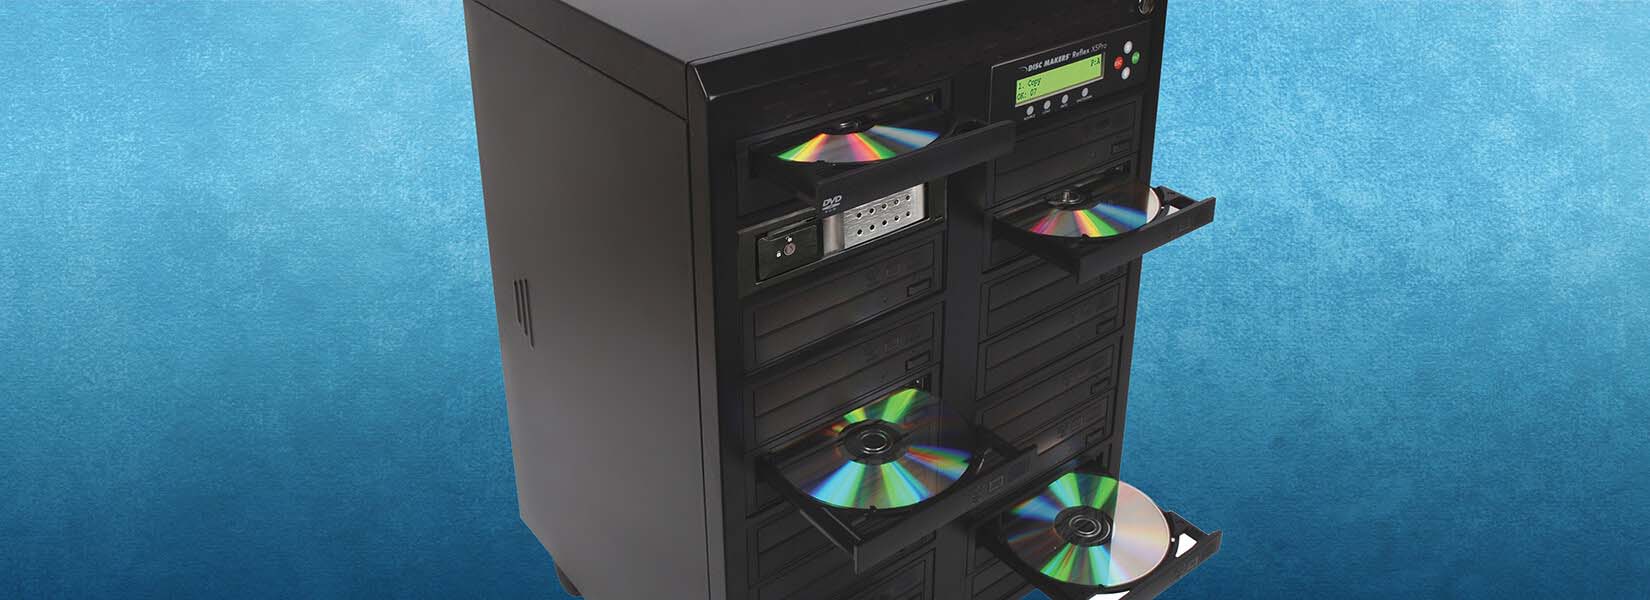 1 to 15 CD/DVD Duplicator